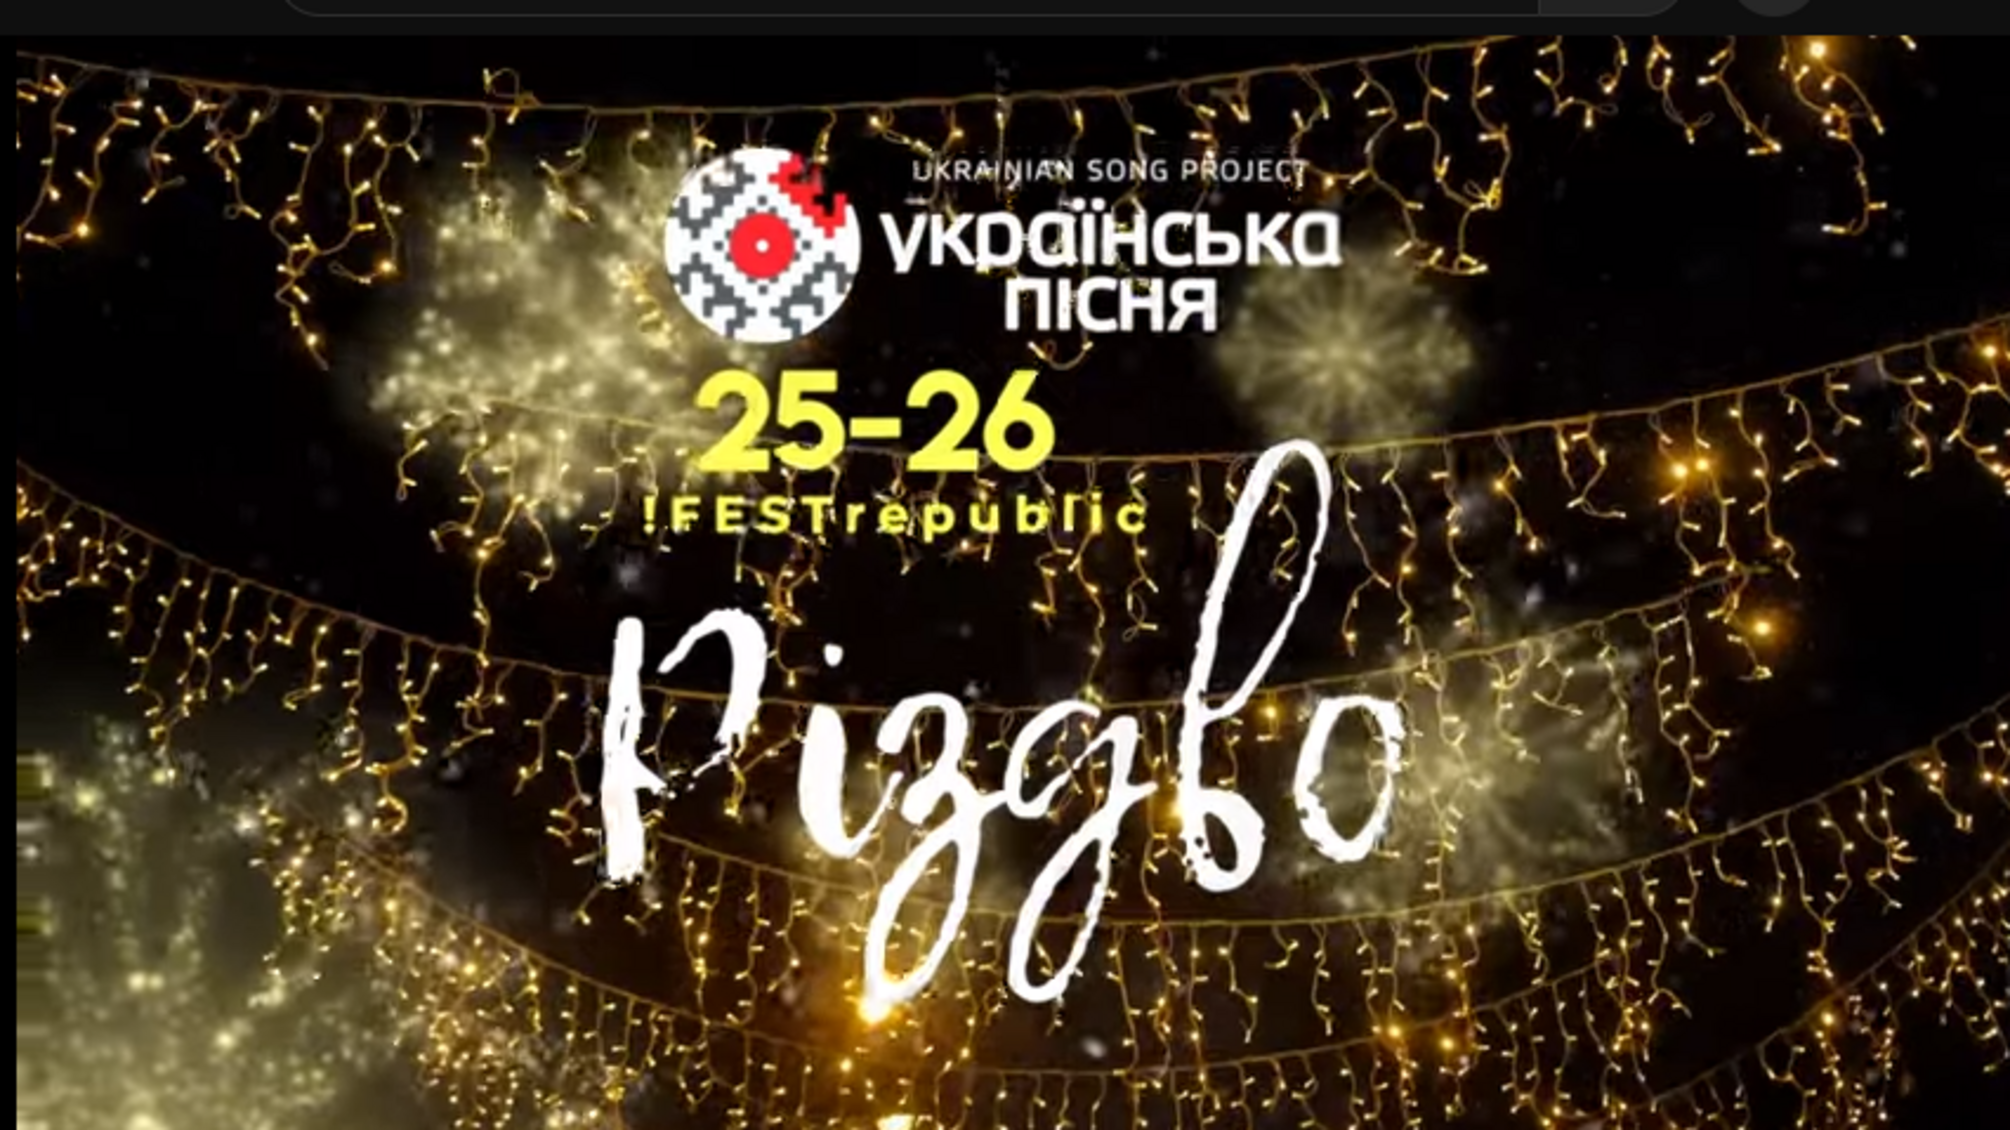 Рождественское чудо во Львове: популярные украинские звезды посетят город Льва с праздничной программой 'Украинская песня/Рождество'